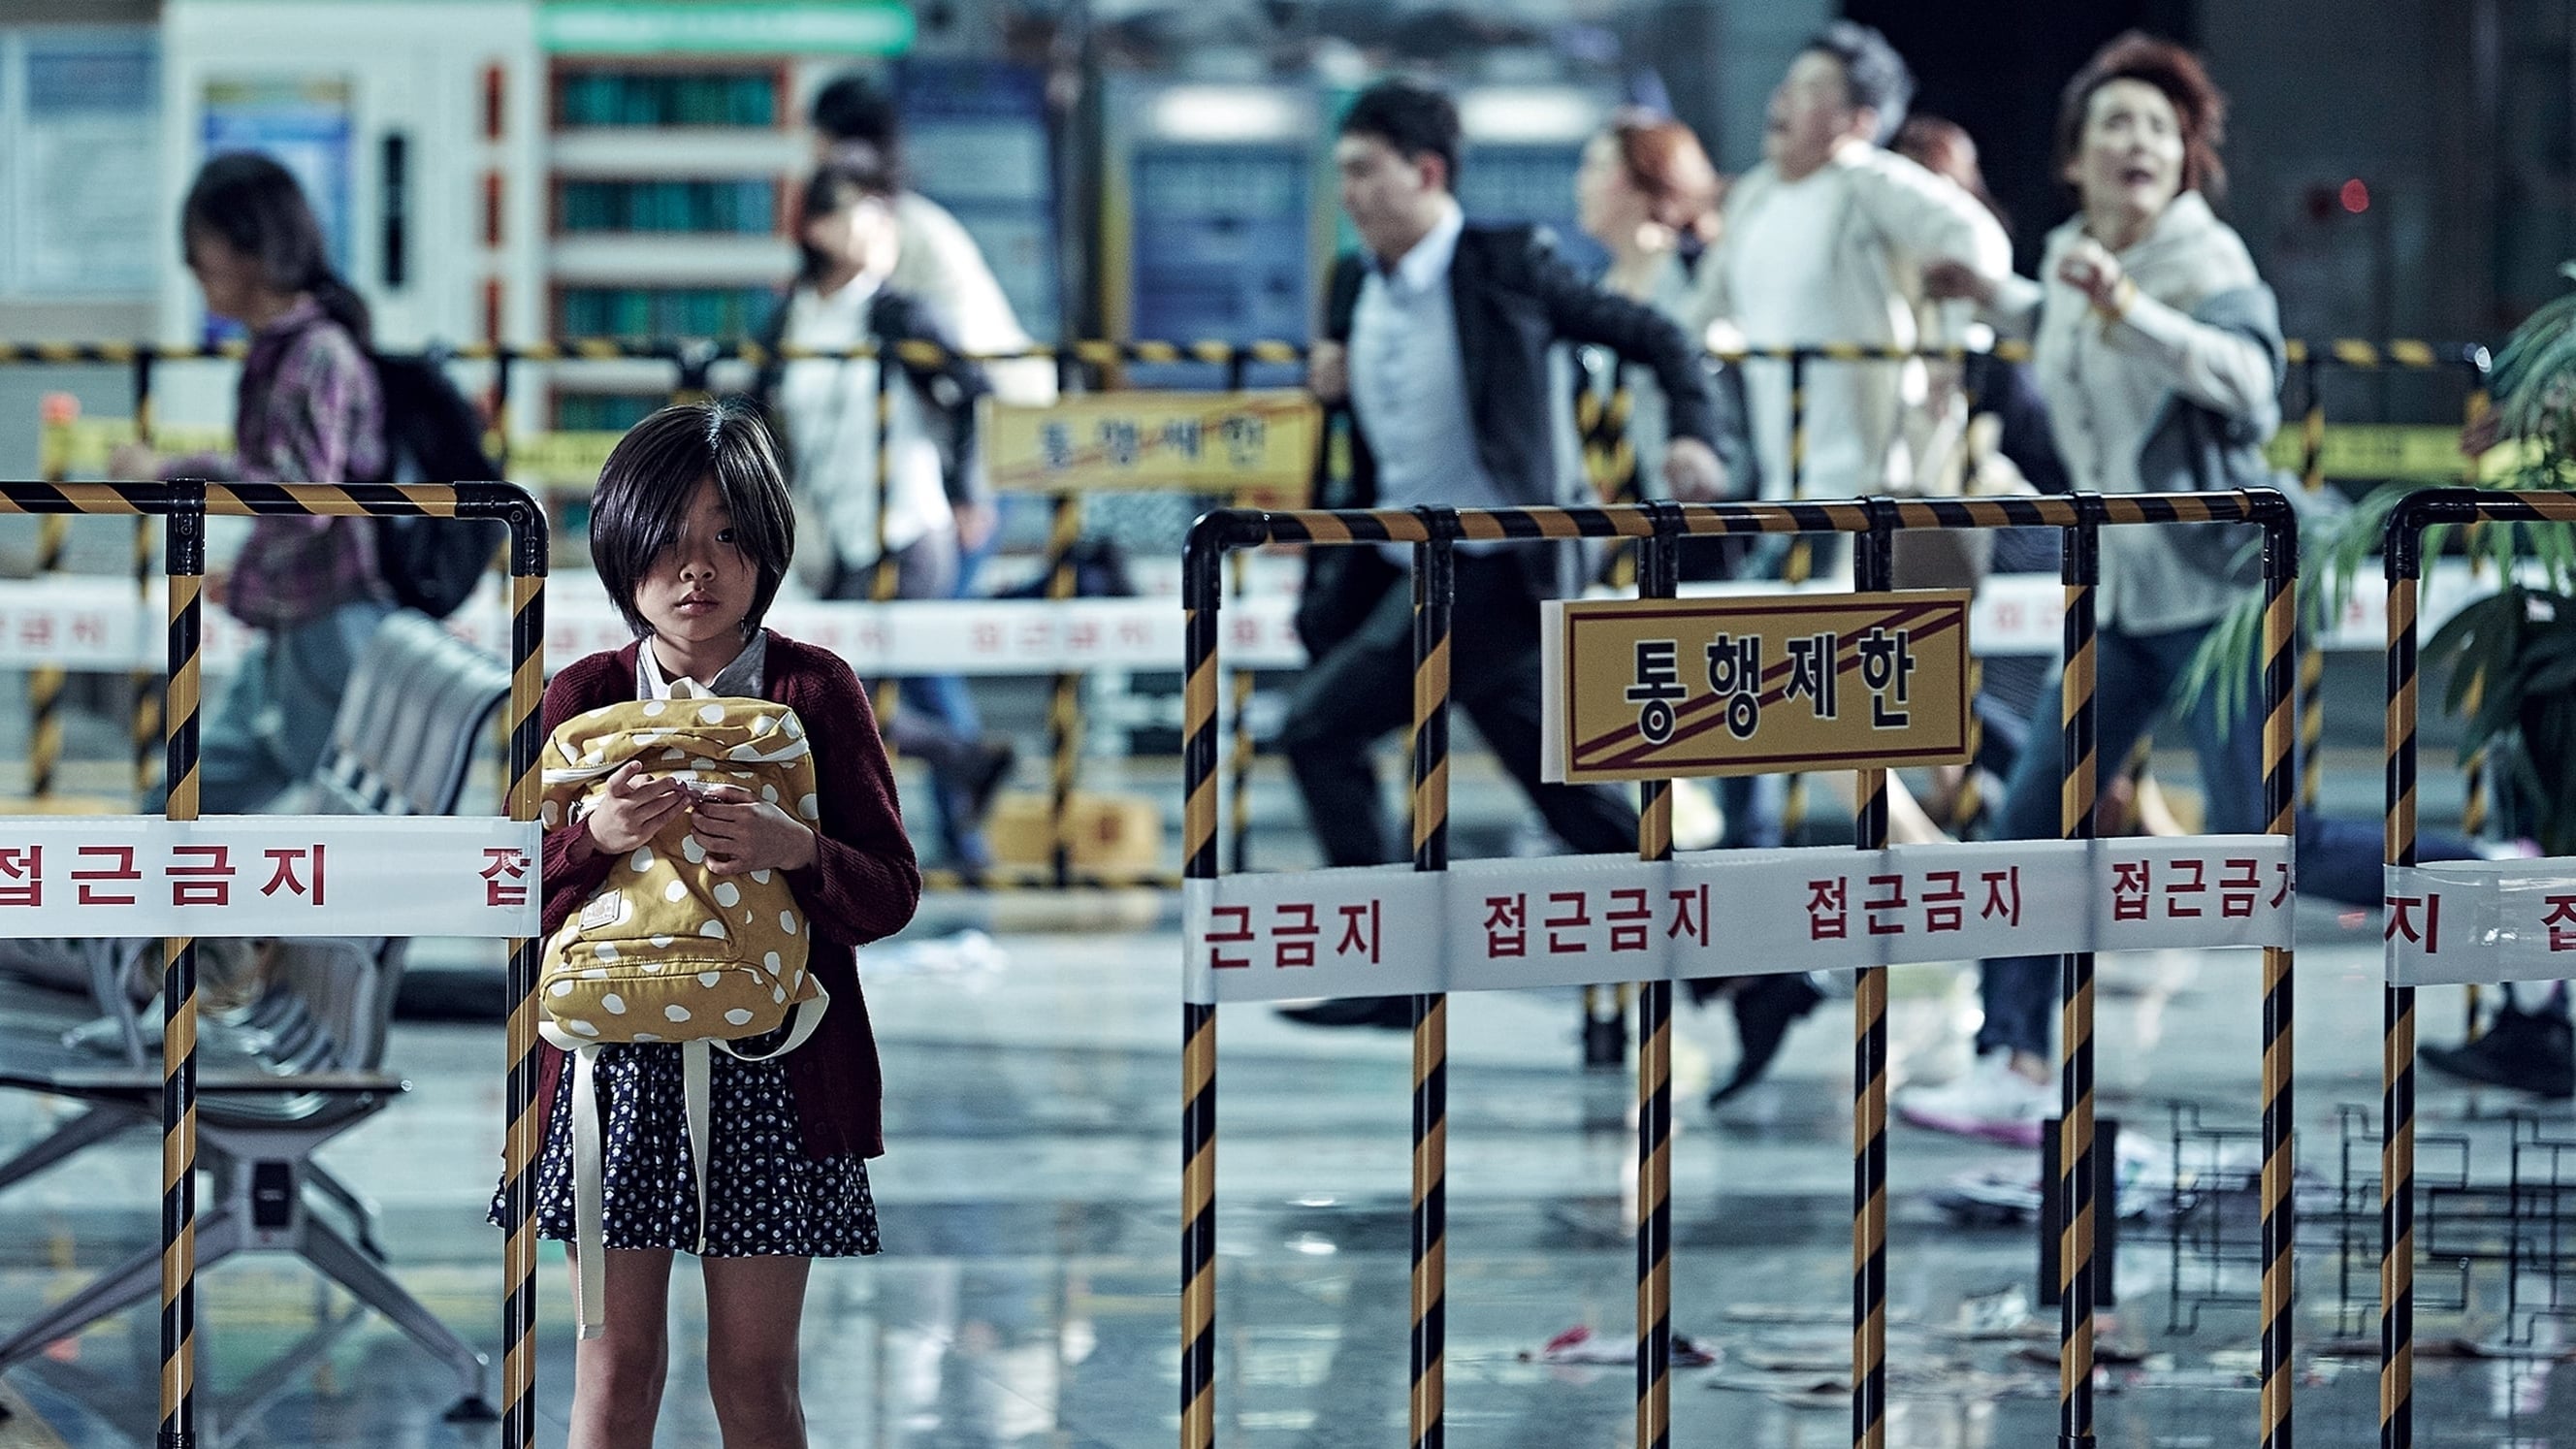 Image du film Dernier Train pour Busan woqir38ar92vqkz6llhabhhmqldjpg